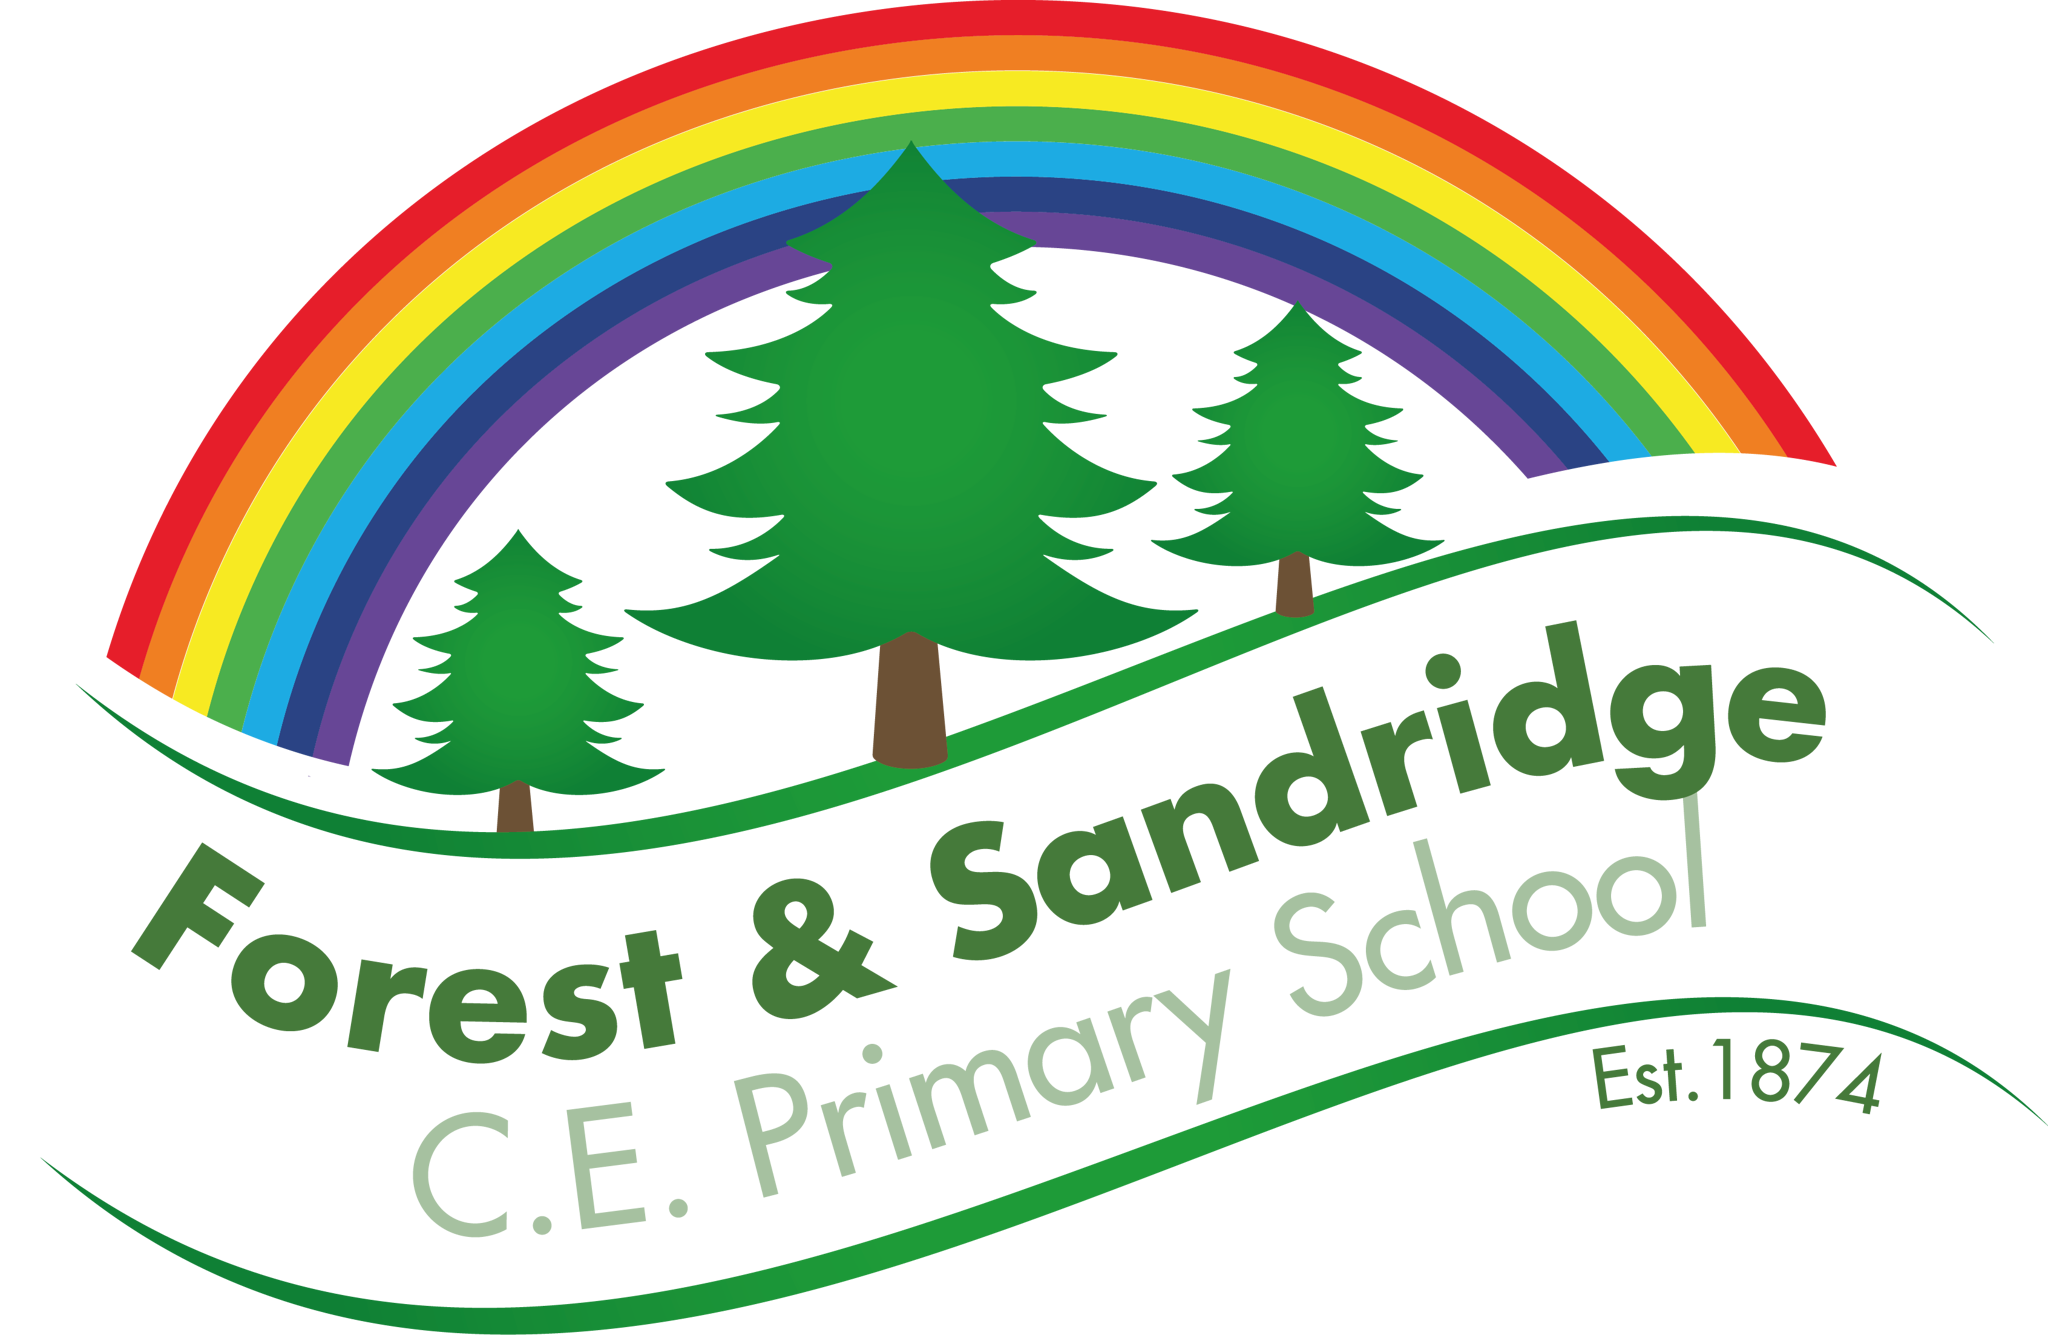 Forest & Sandridge CofE Primary